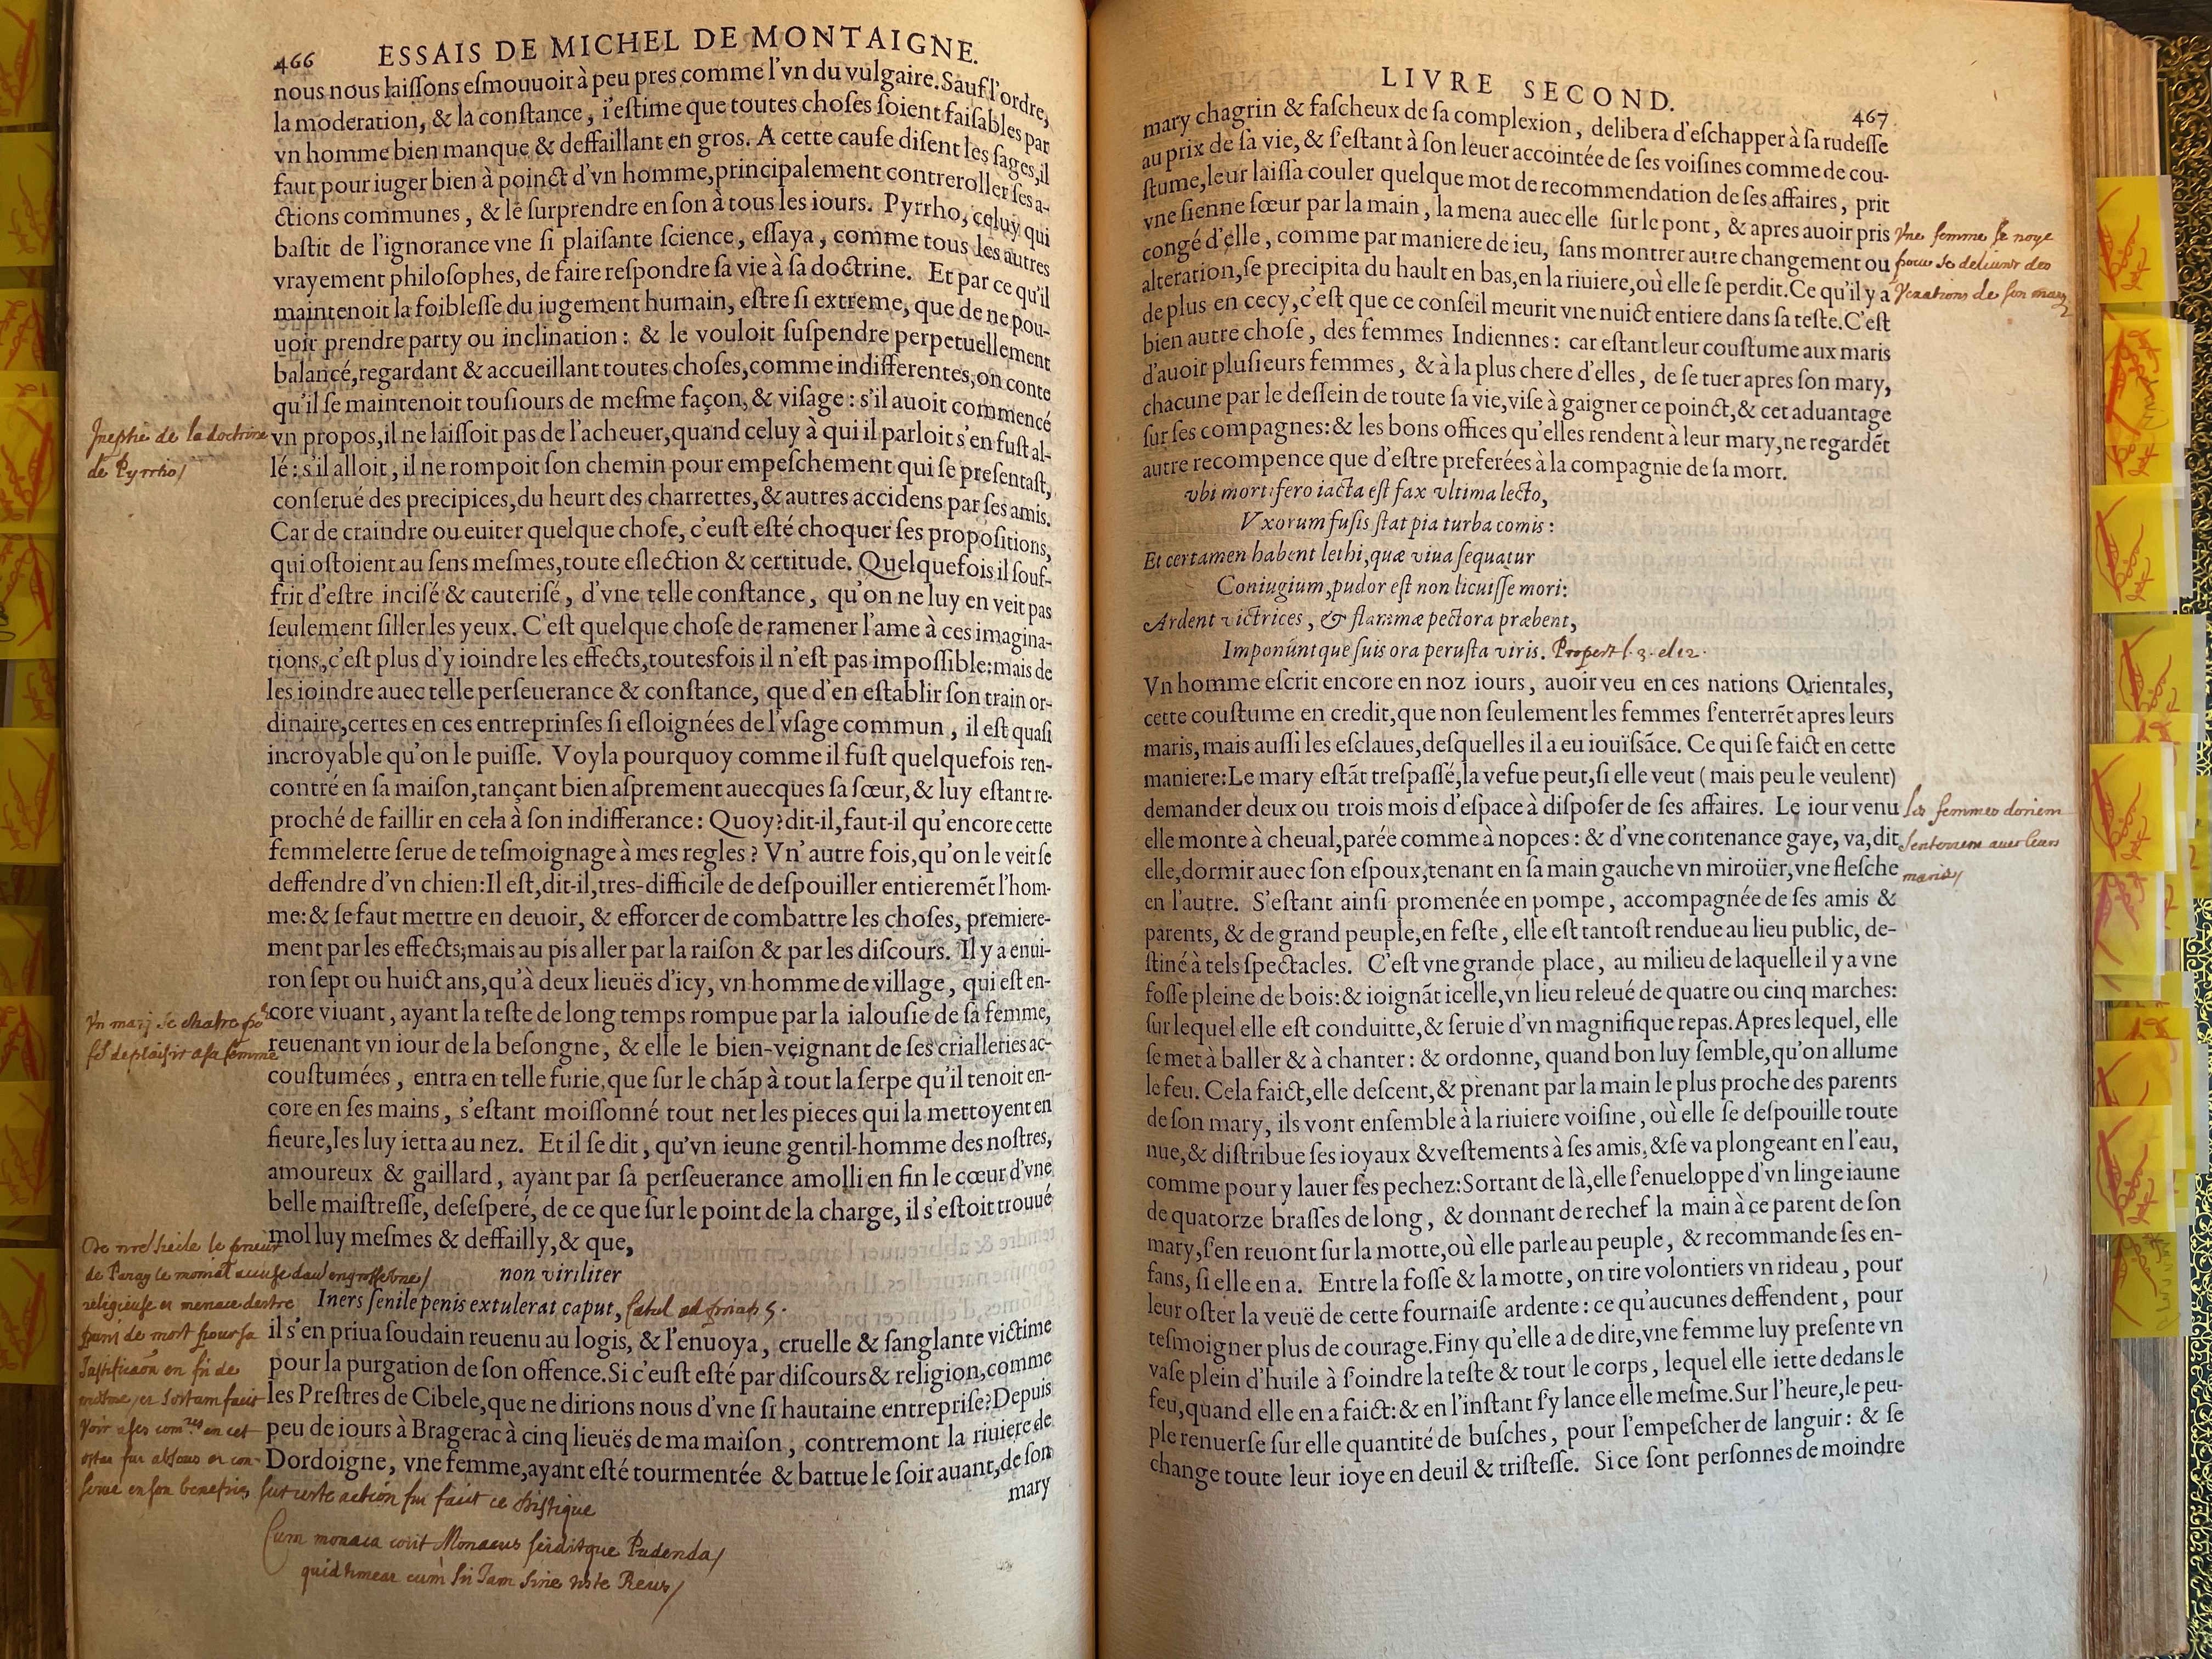 13. - p. 466-467, Livre II. Les Essais, 1595. Exemplaire Laval.